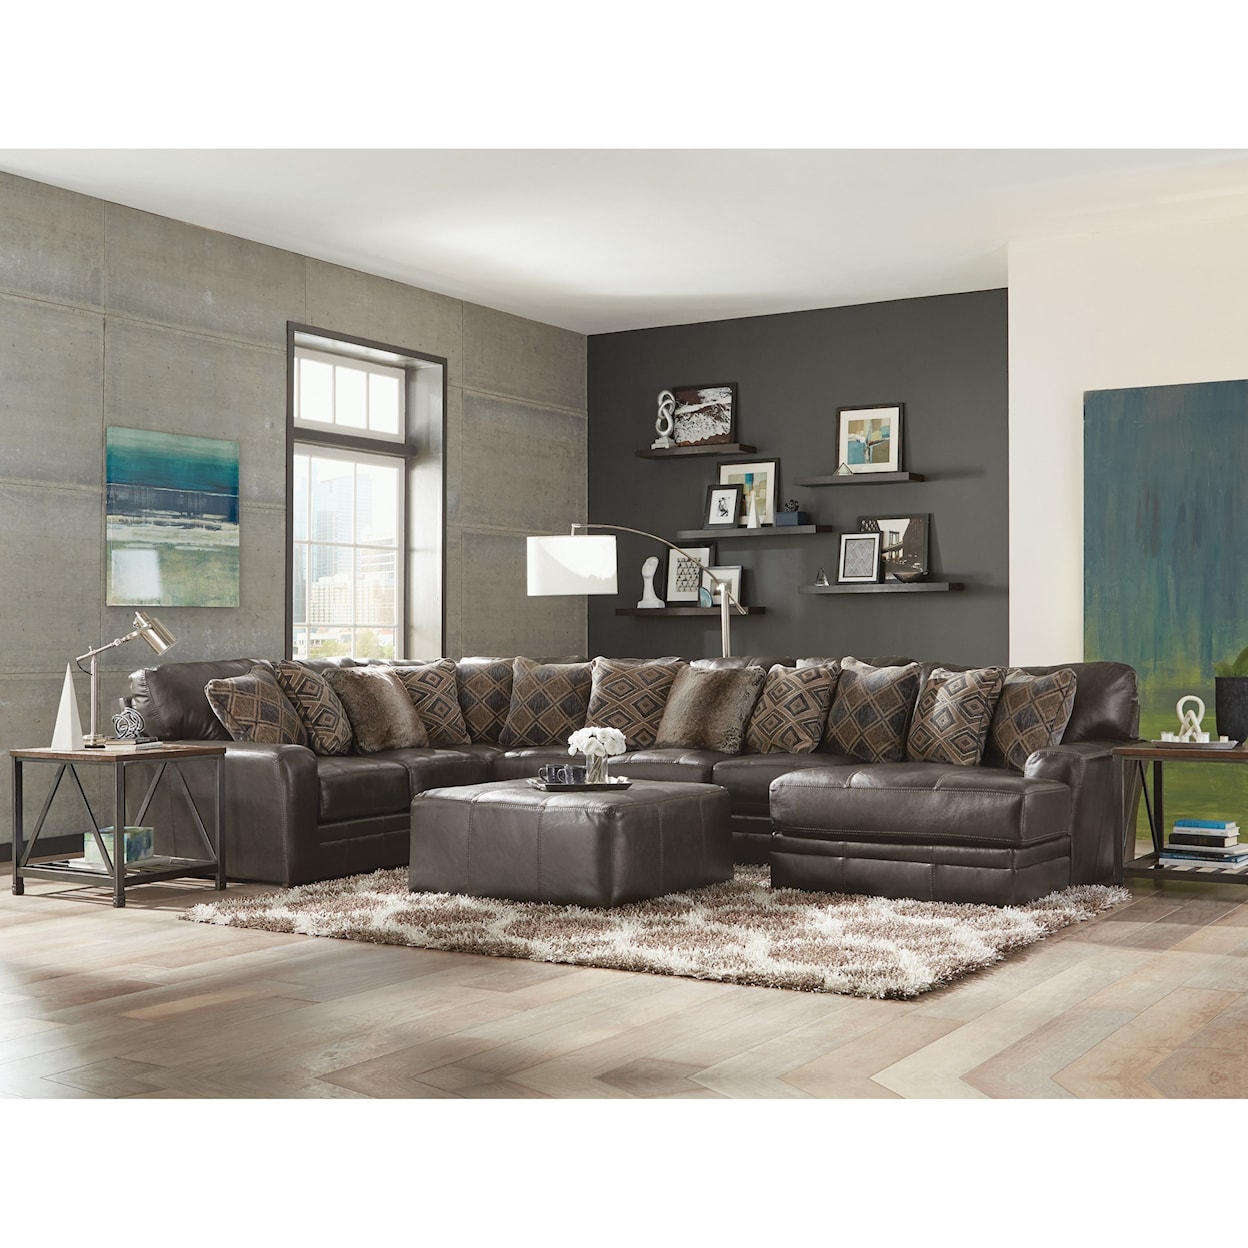 Carolina Furniture 4378 Denali 3 Piece Sectional